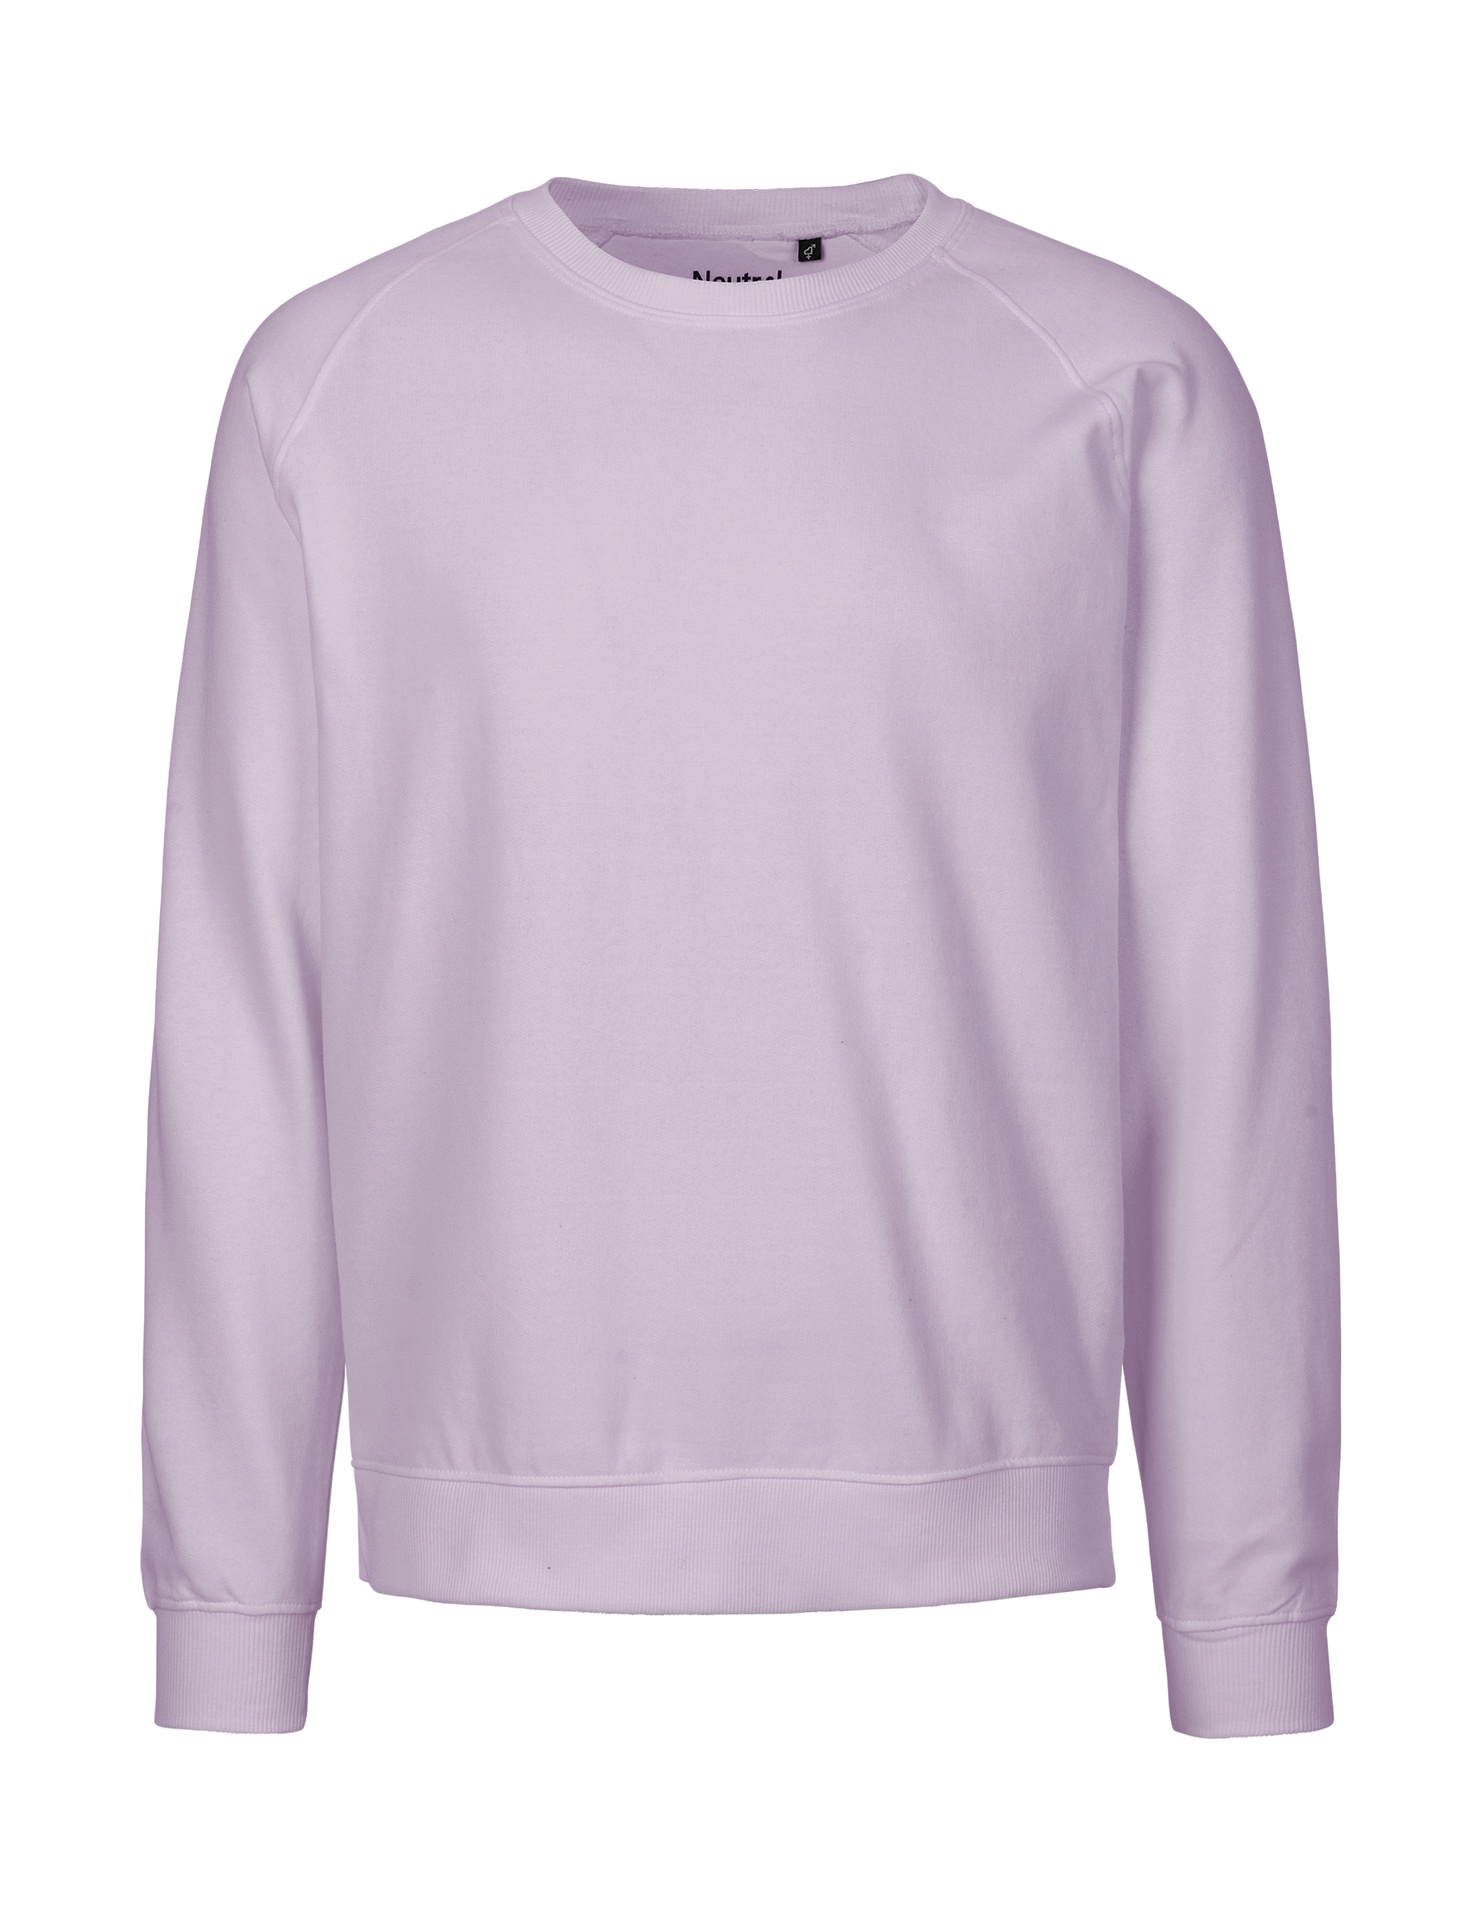 [PR/02844] Unisex Sweatshirt (Dusty Purple 42, L)